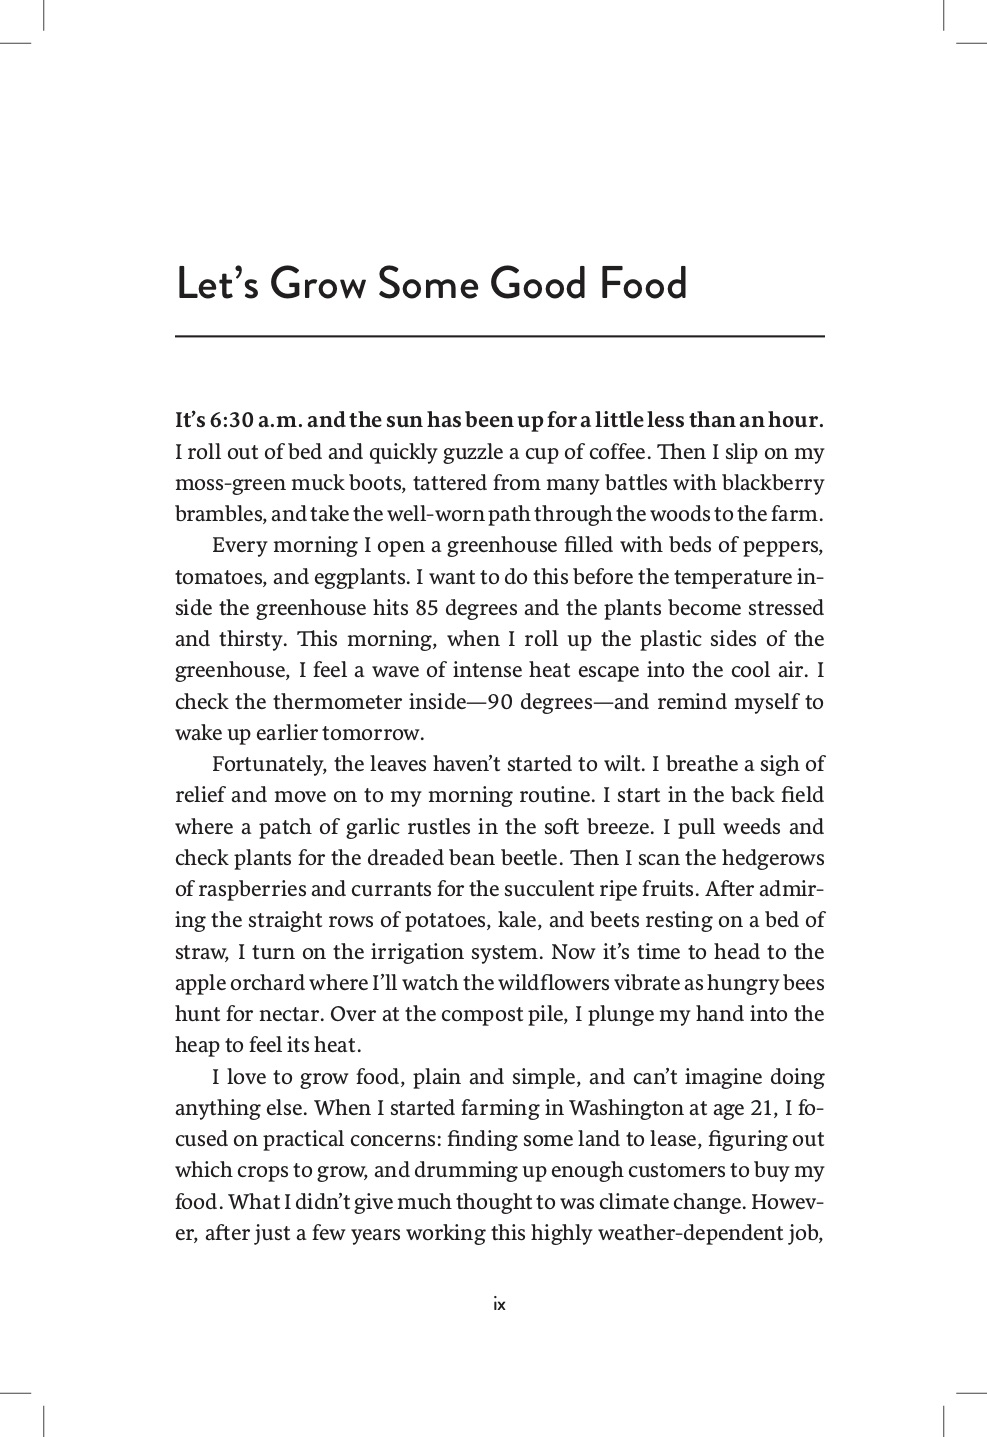 Growing Perennial Foods Preview 6.jpg